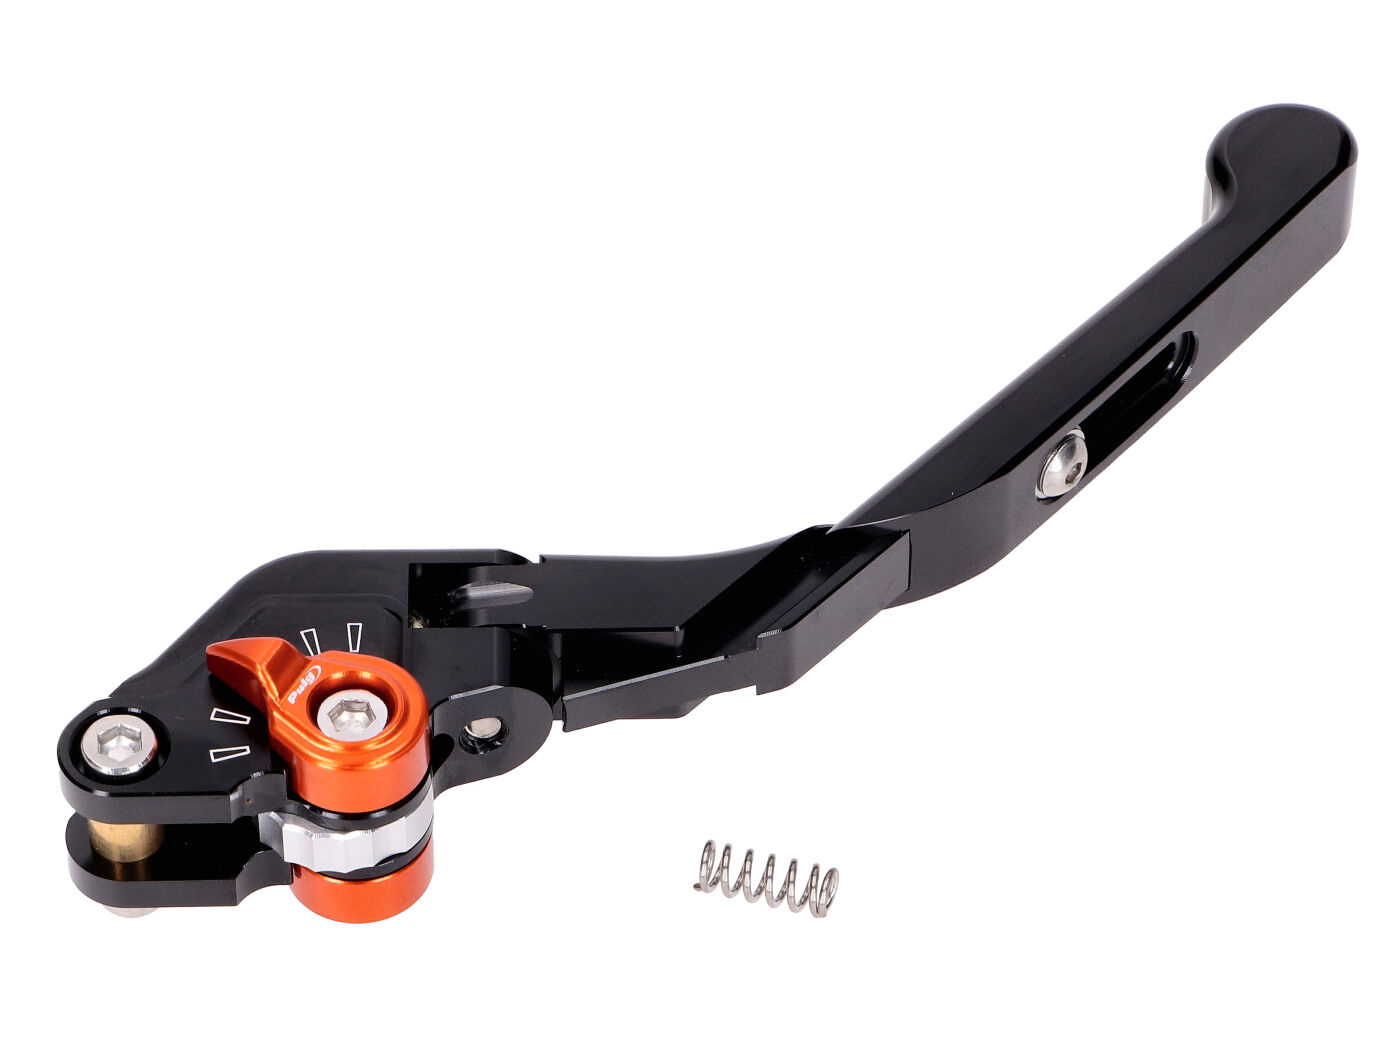 Brake Lever Puig 3.0 Front Adjustable, Foldable, Adjustable Length - Black Orange